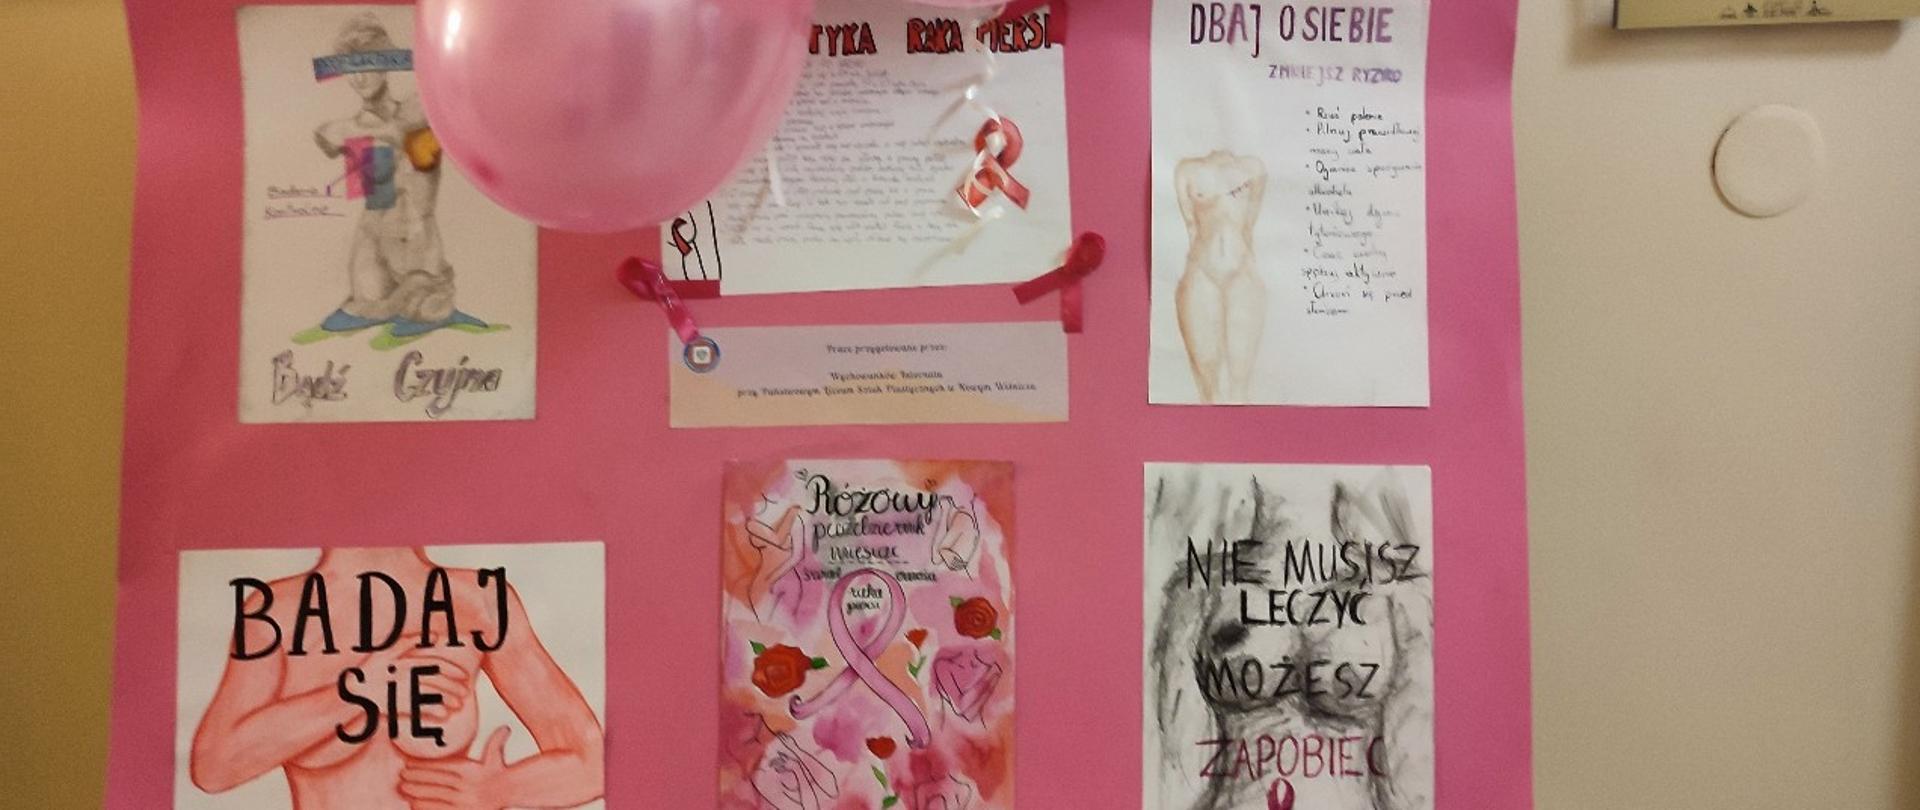 Na górze zdjęcia znajdują się balony. Pod nimi na różowym tle prace plastyczne dotyczące badania piersi. 